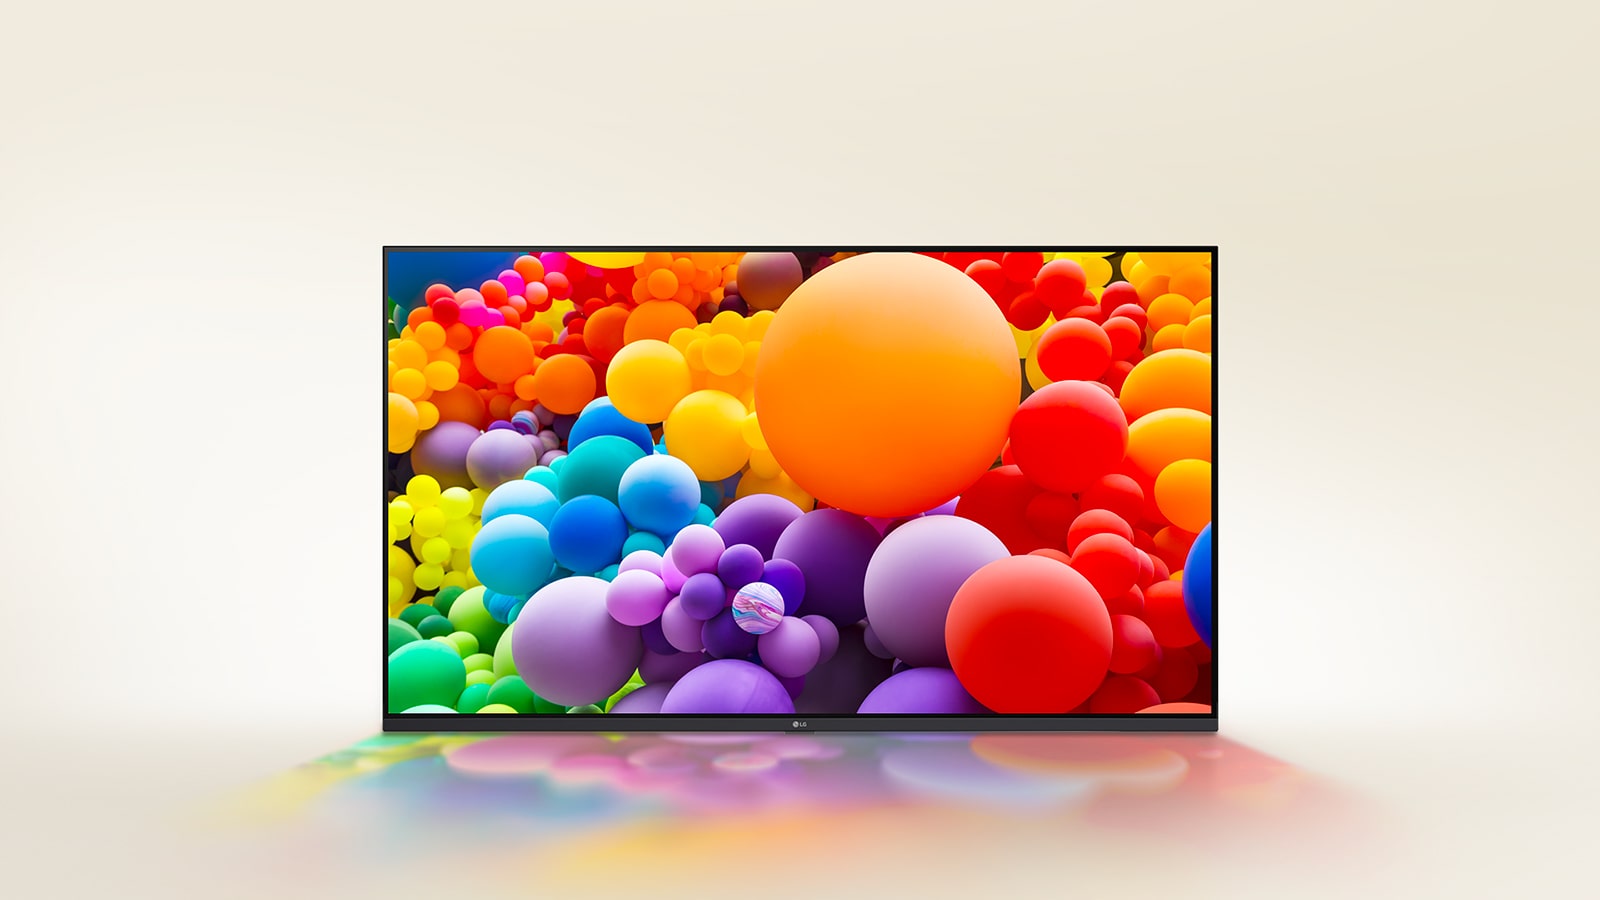 Auf dem LG UHD-Fernseher werden viele Ballons mit unterschiedlichen Farben angezeigt.	